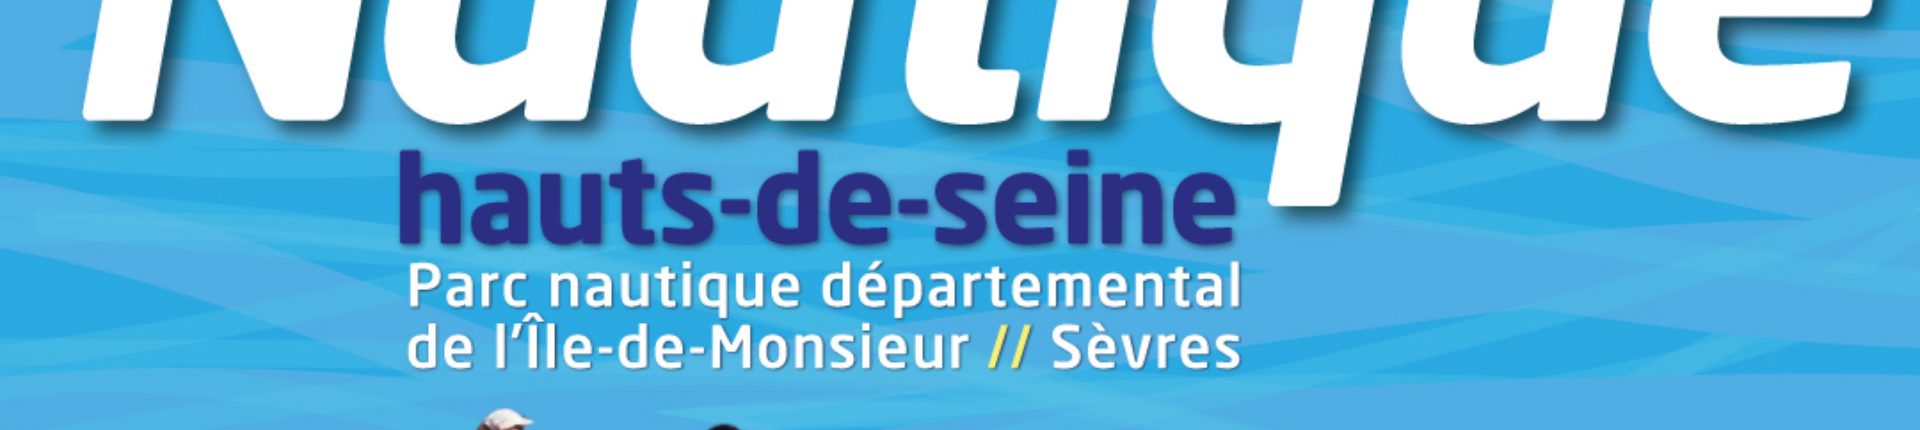 Nautique Hauts-de-Seine et Vacan’Sports reviennent pour une nouvelle édition